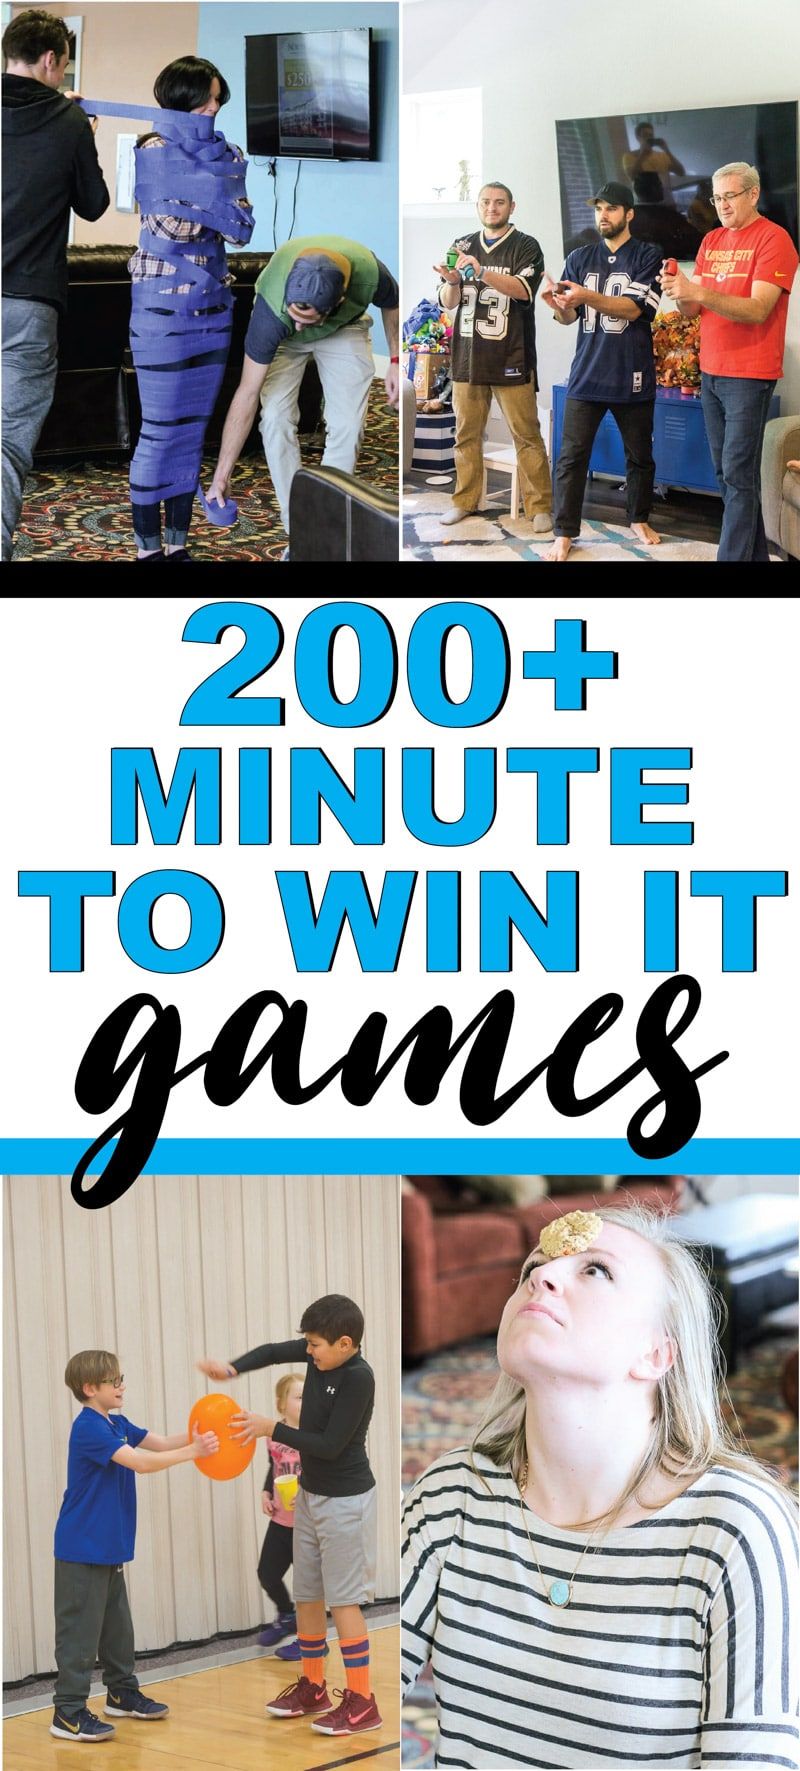 Labākā minūte, lai uzvarētu spēles bērniem, pusaudžiem vai pat pieaugušajiem! Vairāk nekā 200 + jautras spēles, kas ir ideāli piemērotas ģimenes atkalapvienošanai, skolai, skolas ballītēm un daudz ko citu! Vieglas spēles, jautras komandas spēles un daudz ko citu!